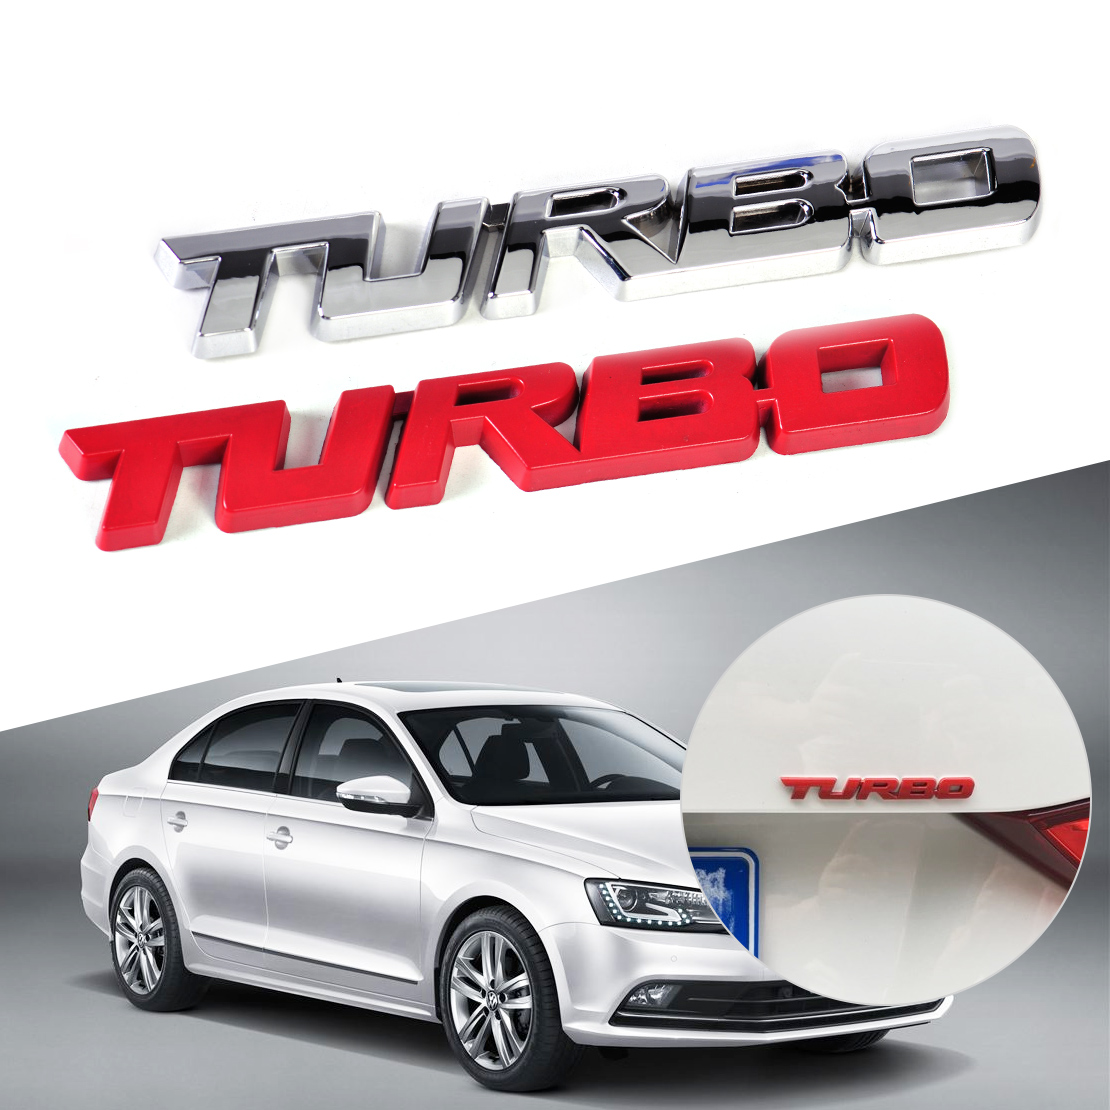 Metall Turbo Power Emblem Badge Auto Aufkleber 3D Schriftzug car Sticker  Chrom